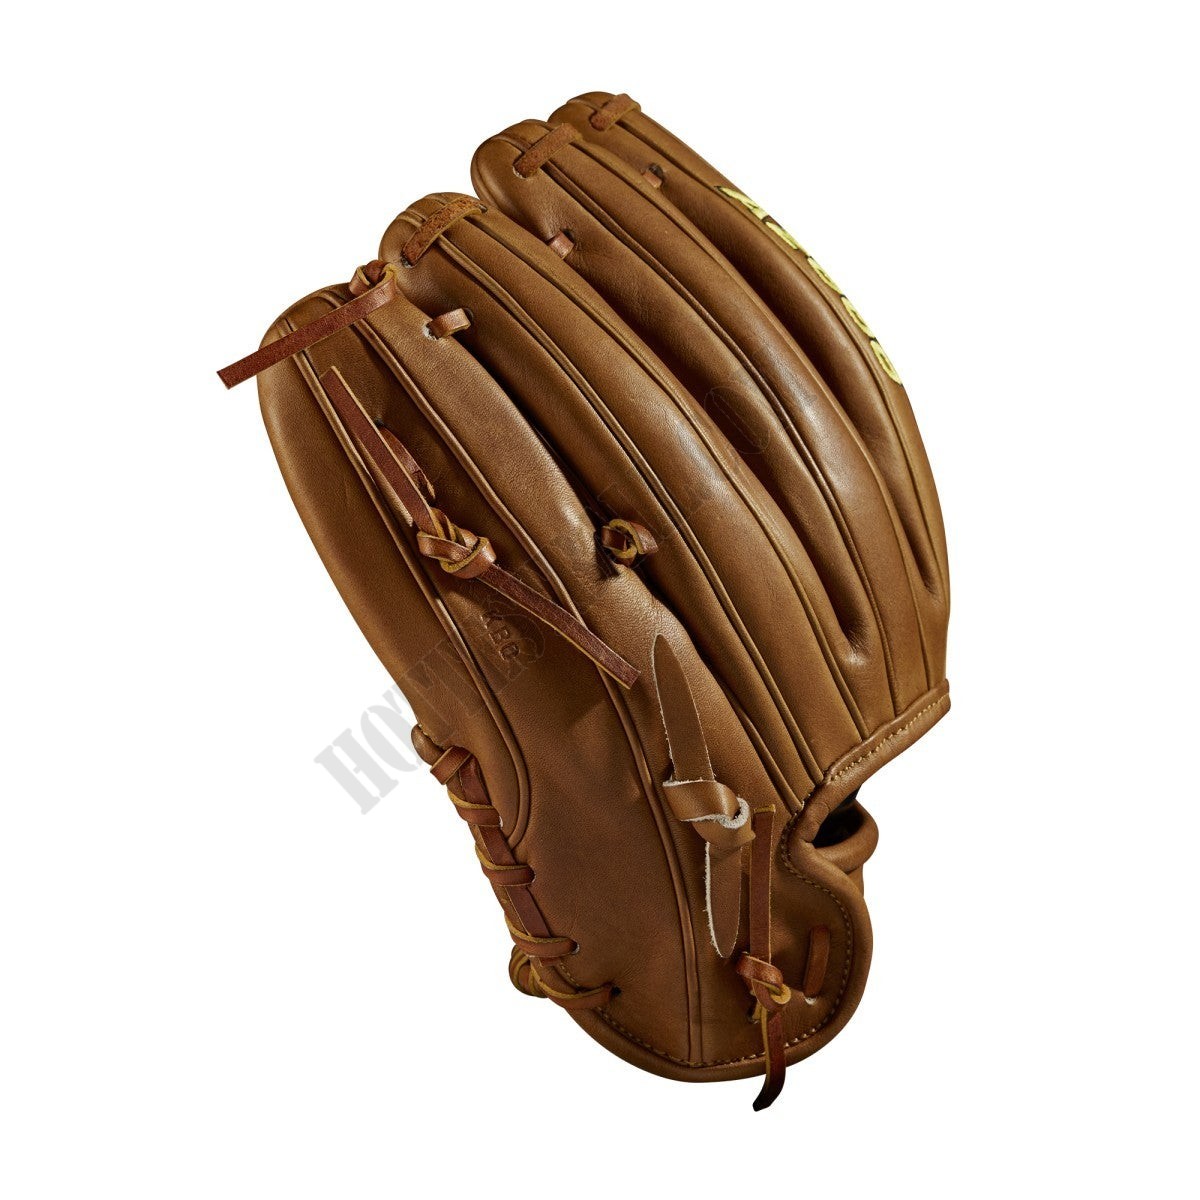 2021 A2000 DP15 11.5" Infield Baseball Glove ● Wilson Promotions - -4